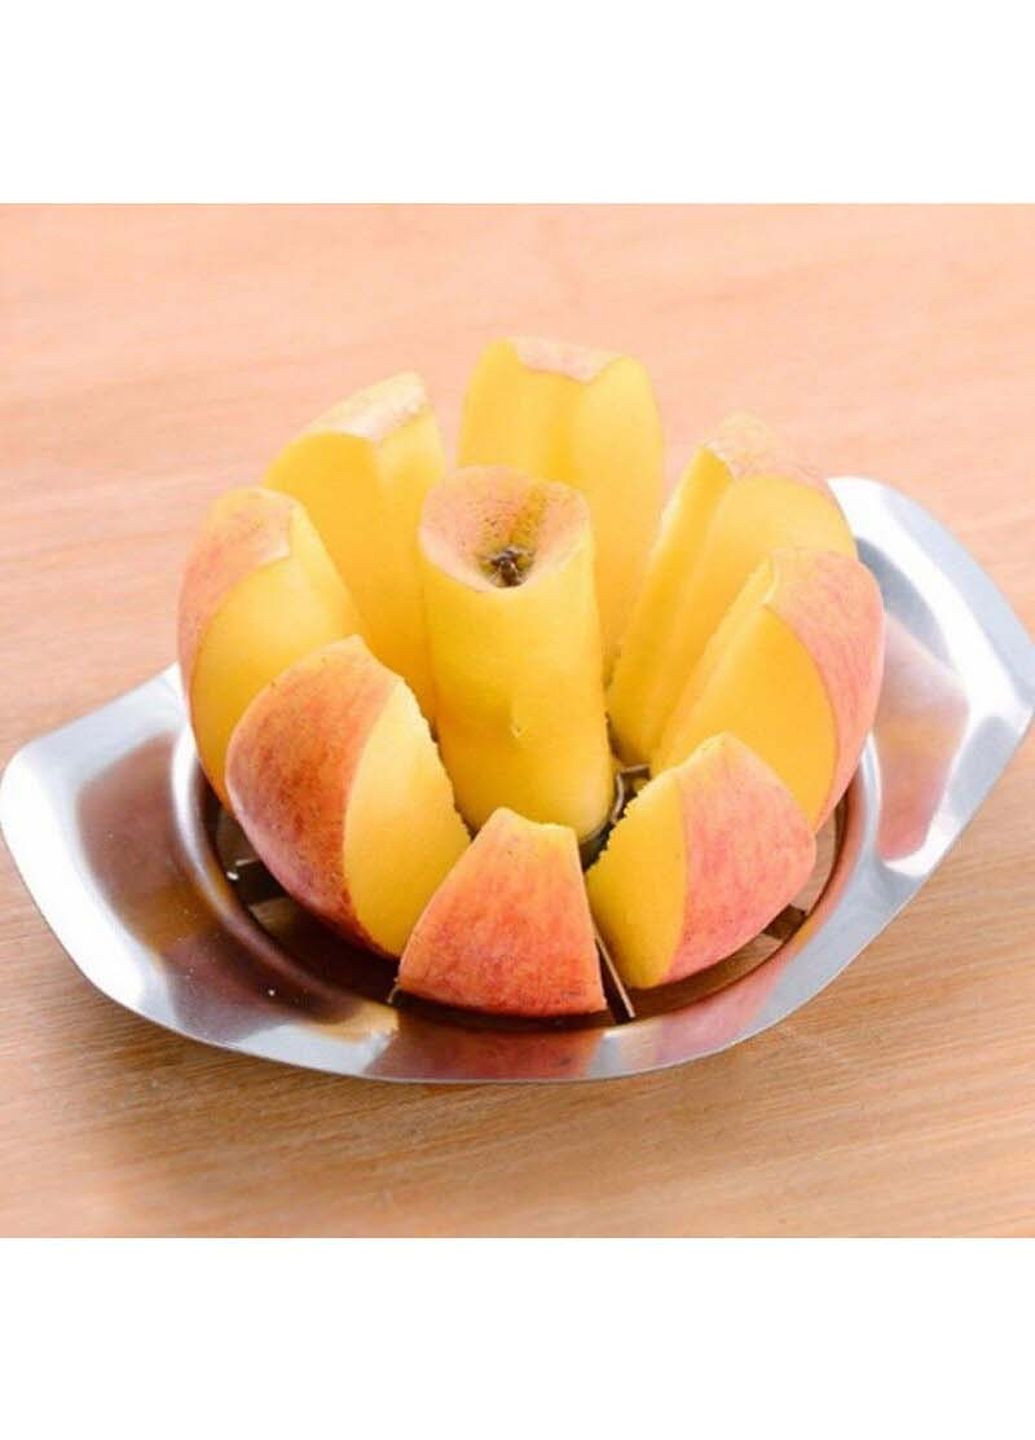 Специальный кухонный нож яблокорезка металлическая для нарезки яблок дольками Kitchen Master (261326491)